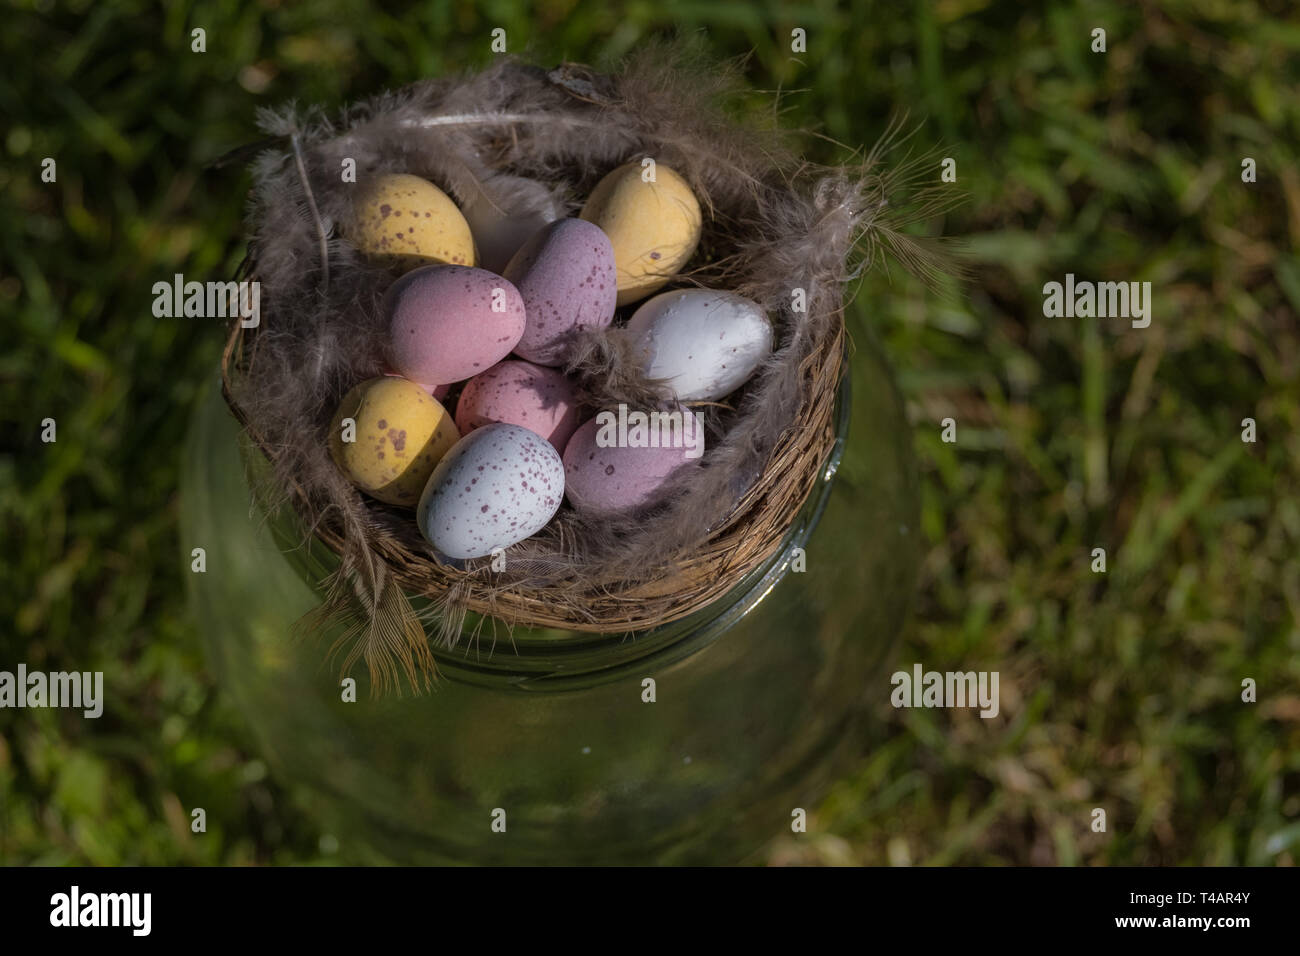 Mini Schokolade Eier in einem Nest mit Vogelfedern saß oben auf der Glas auf dem Gras. Religion/Essen und Trinken. Stockfoto